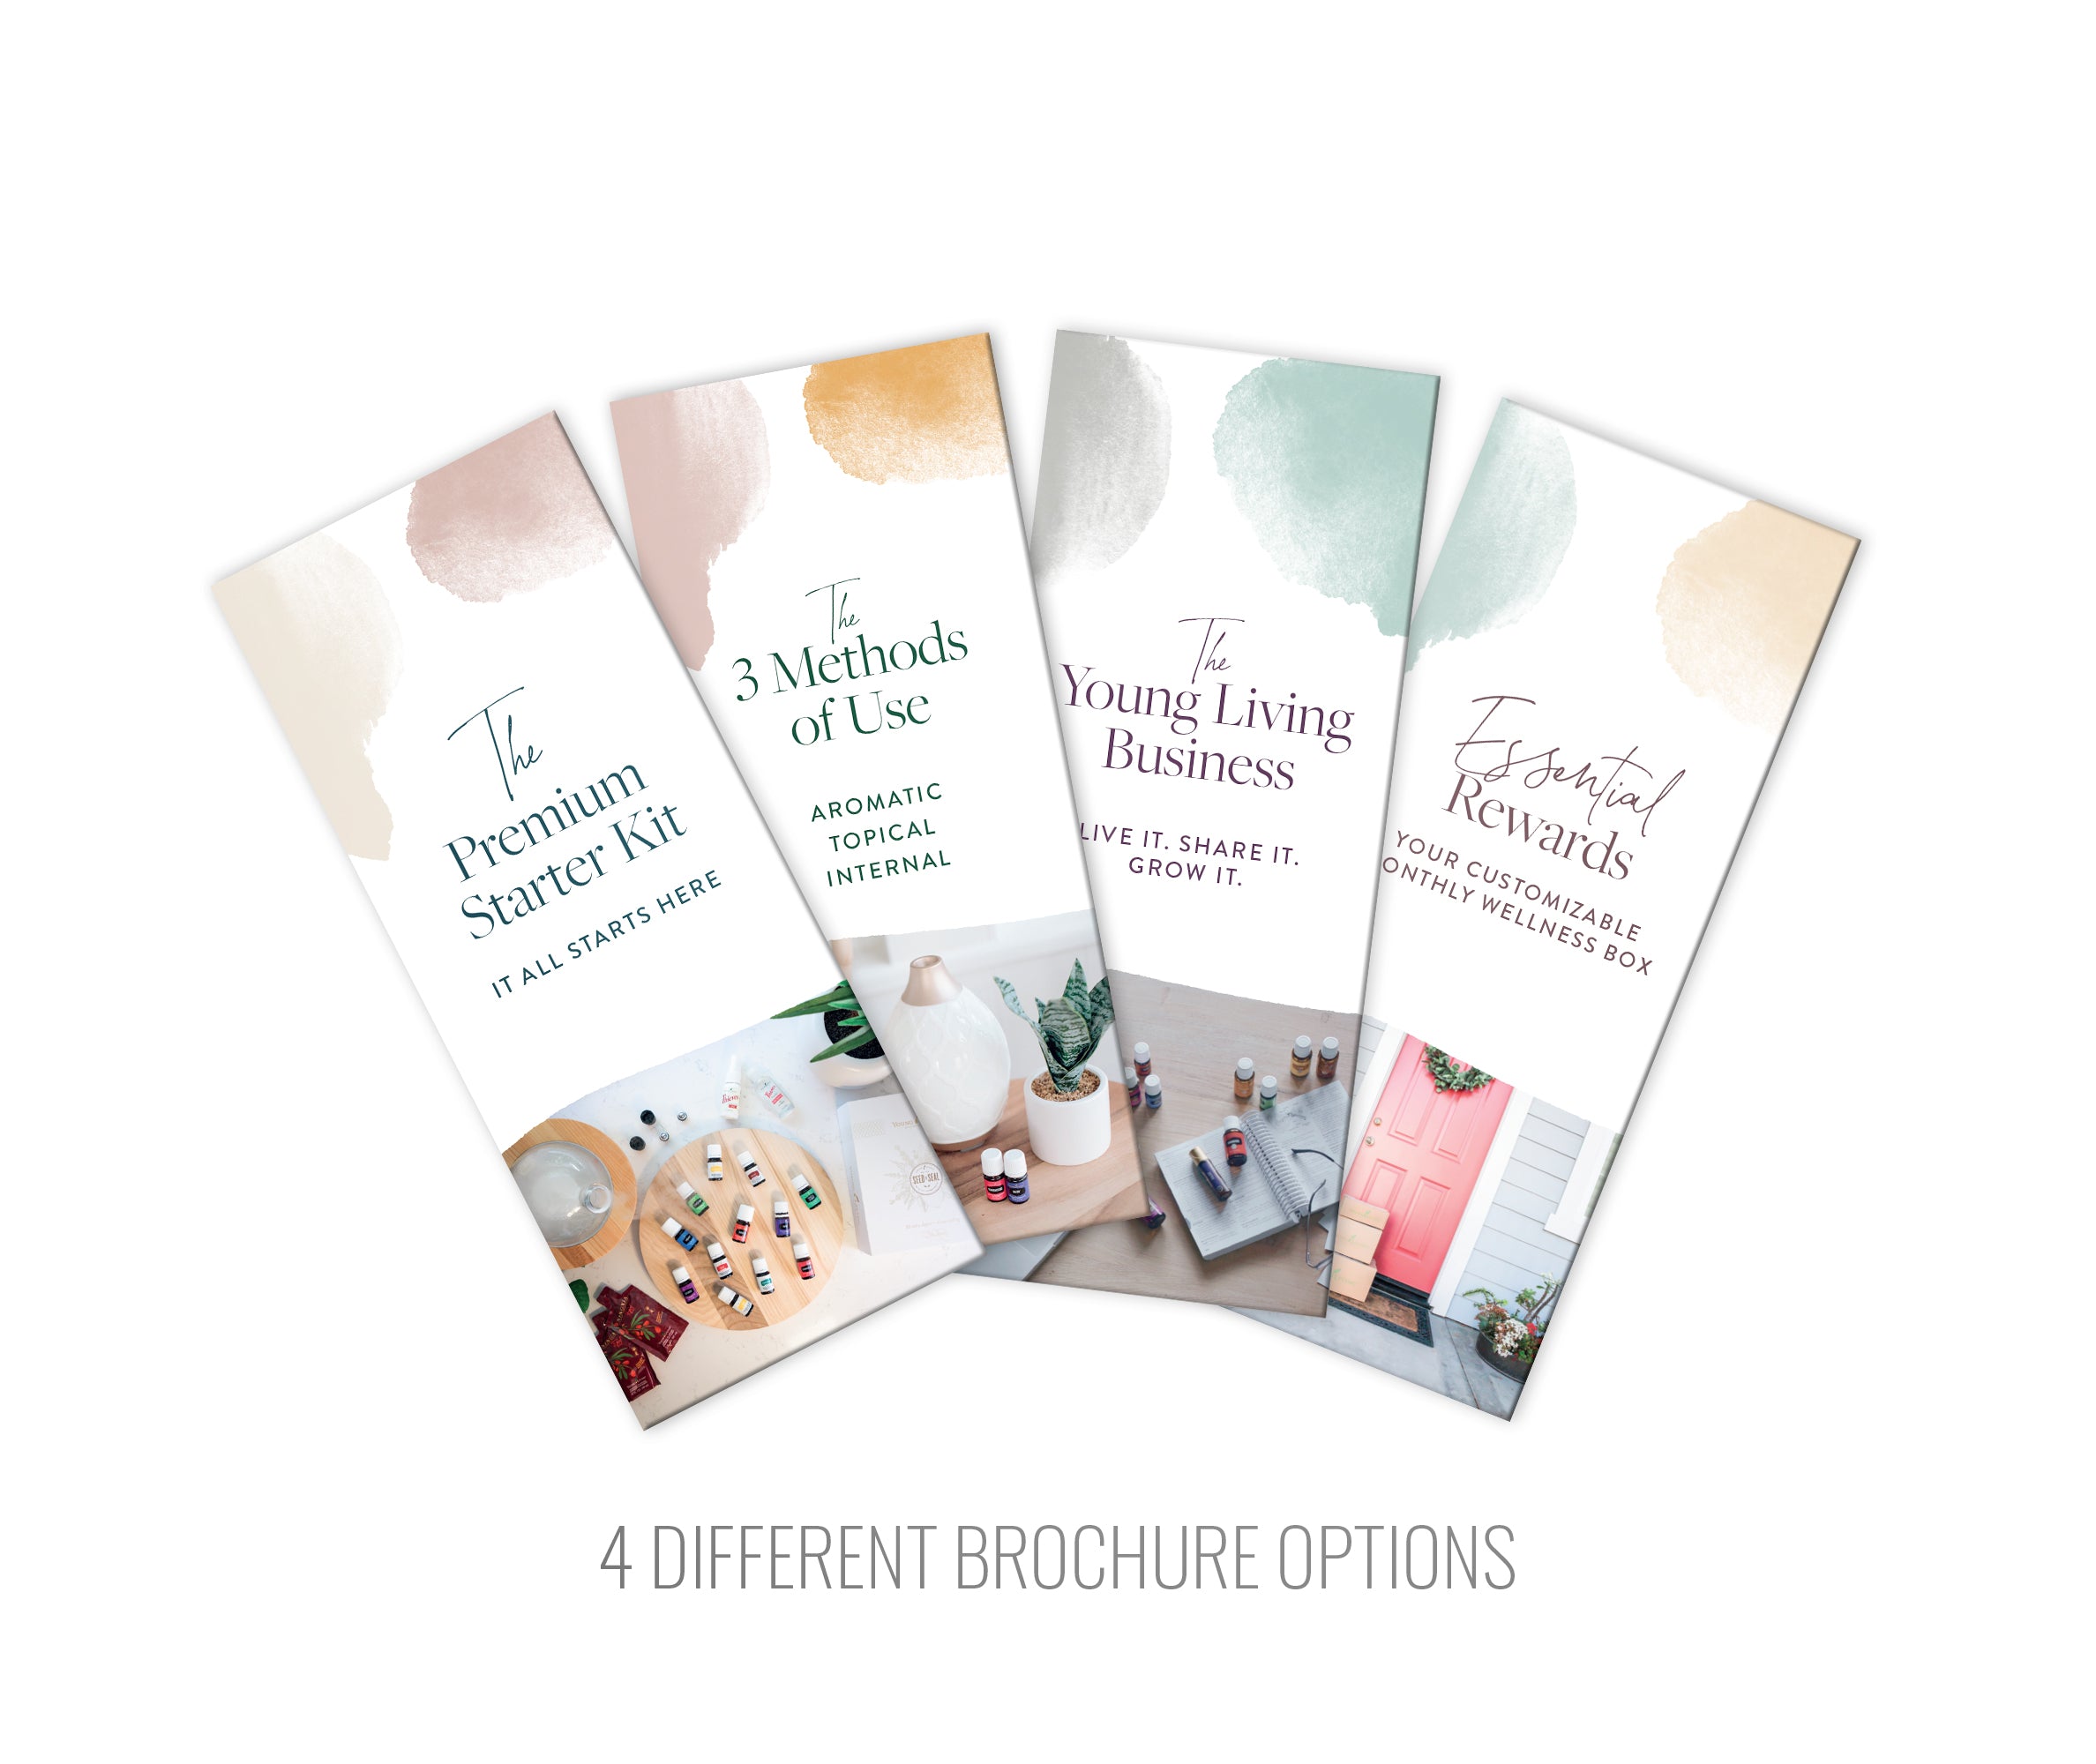 Brochure - 3 Methods of Use: Pack of 25